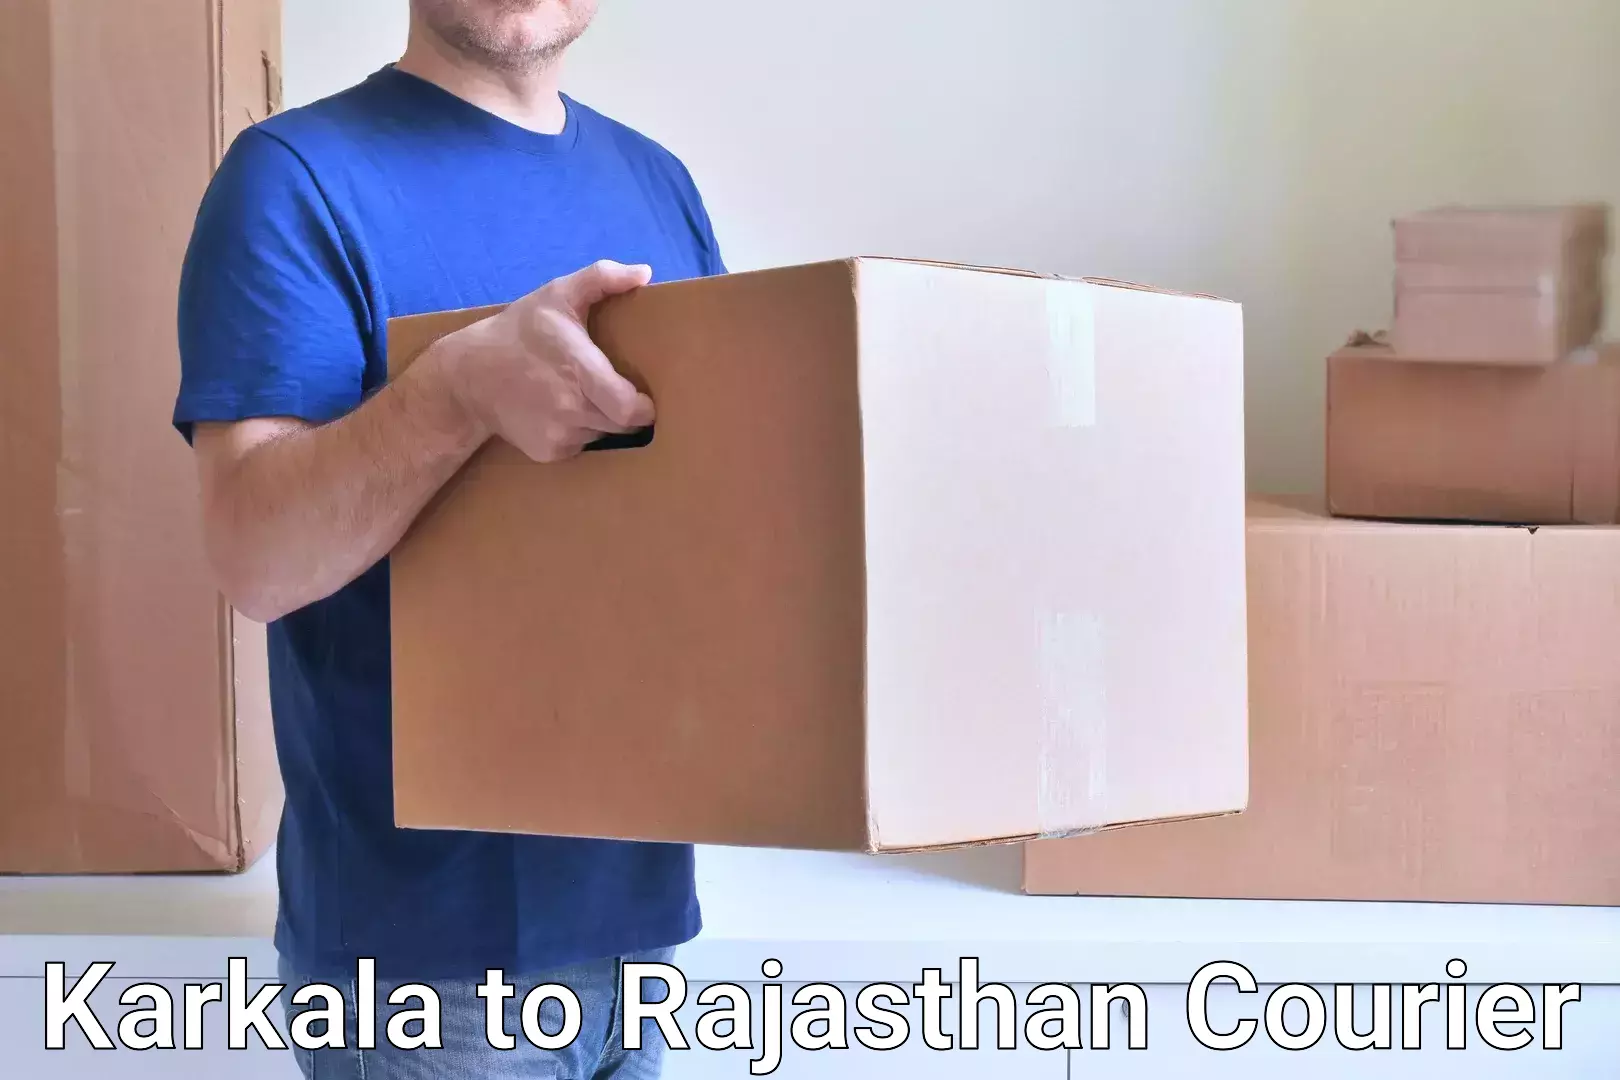 Modern courier technology Karkala to Sambhar